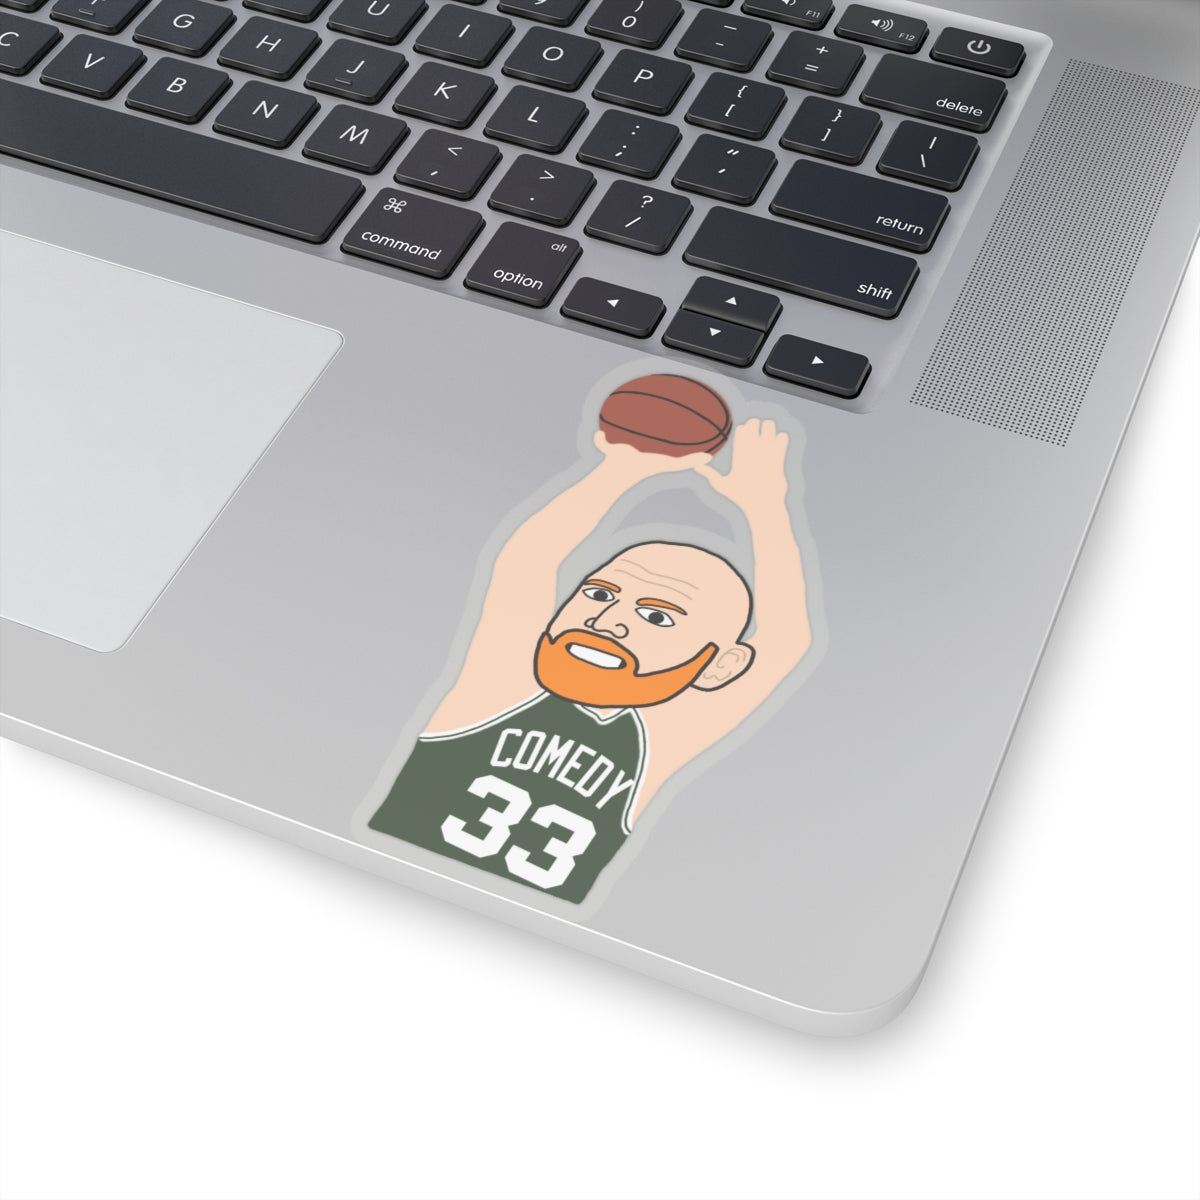 Bill Burrd Boston Celtics Larry Bird Bill Burr Stickers Next Cult Brand